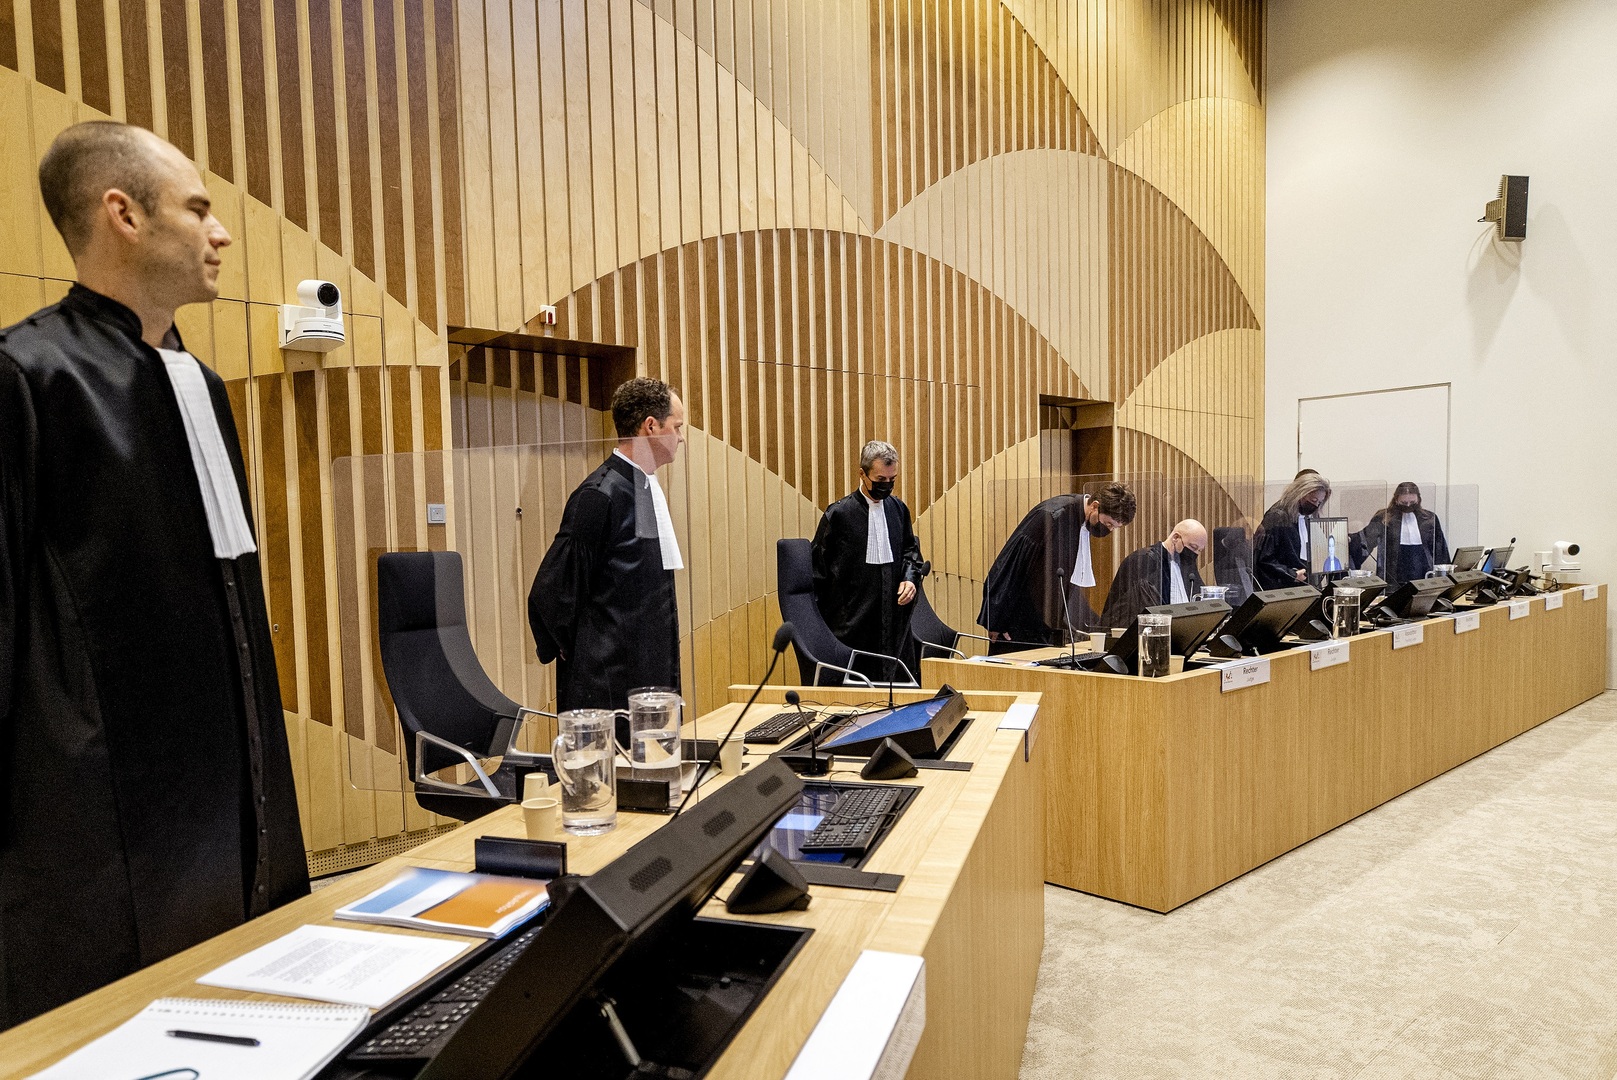 النيابة العامة الهولندية تنهي مداخلتها في المحكمة في قضية MH17